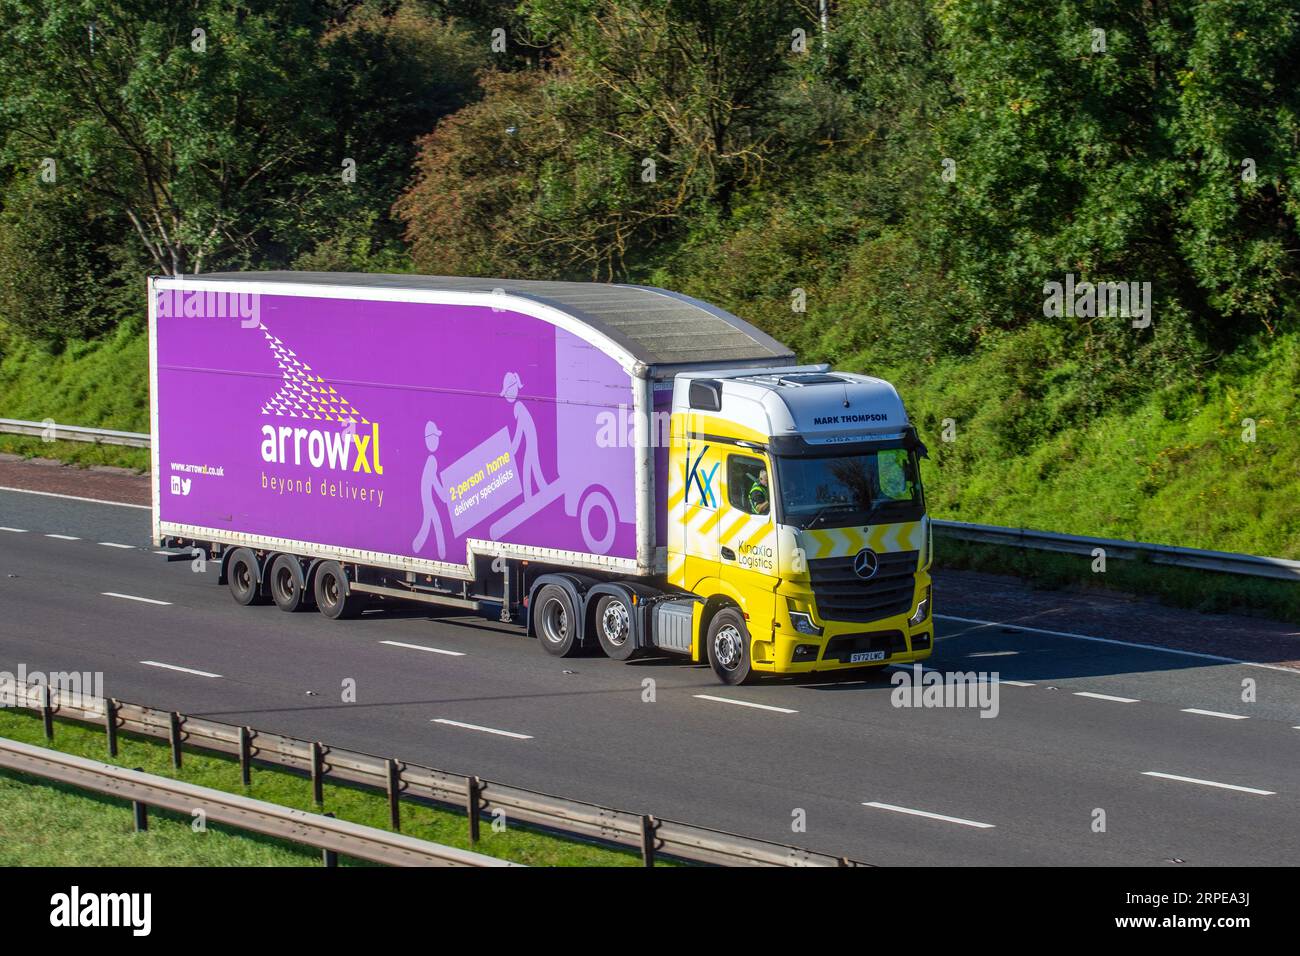 ArrowXL, Arrow XL e Kinaxia Logistics. Mark Thompson Shipping Freight, Mercedes-Benz Heavy haulage, ArrowXL de, specialista per consegne a domicilio per due persone, sulla M6, a Greater Manchester, Regno Unito Foto Stock